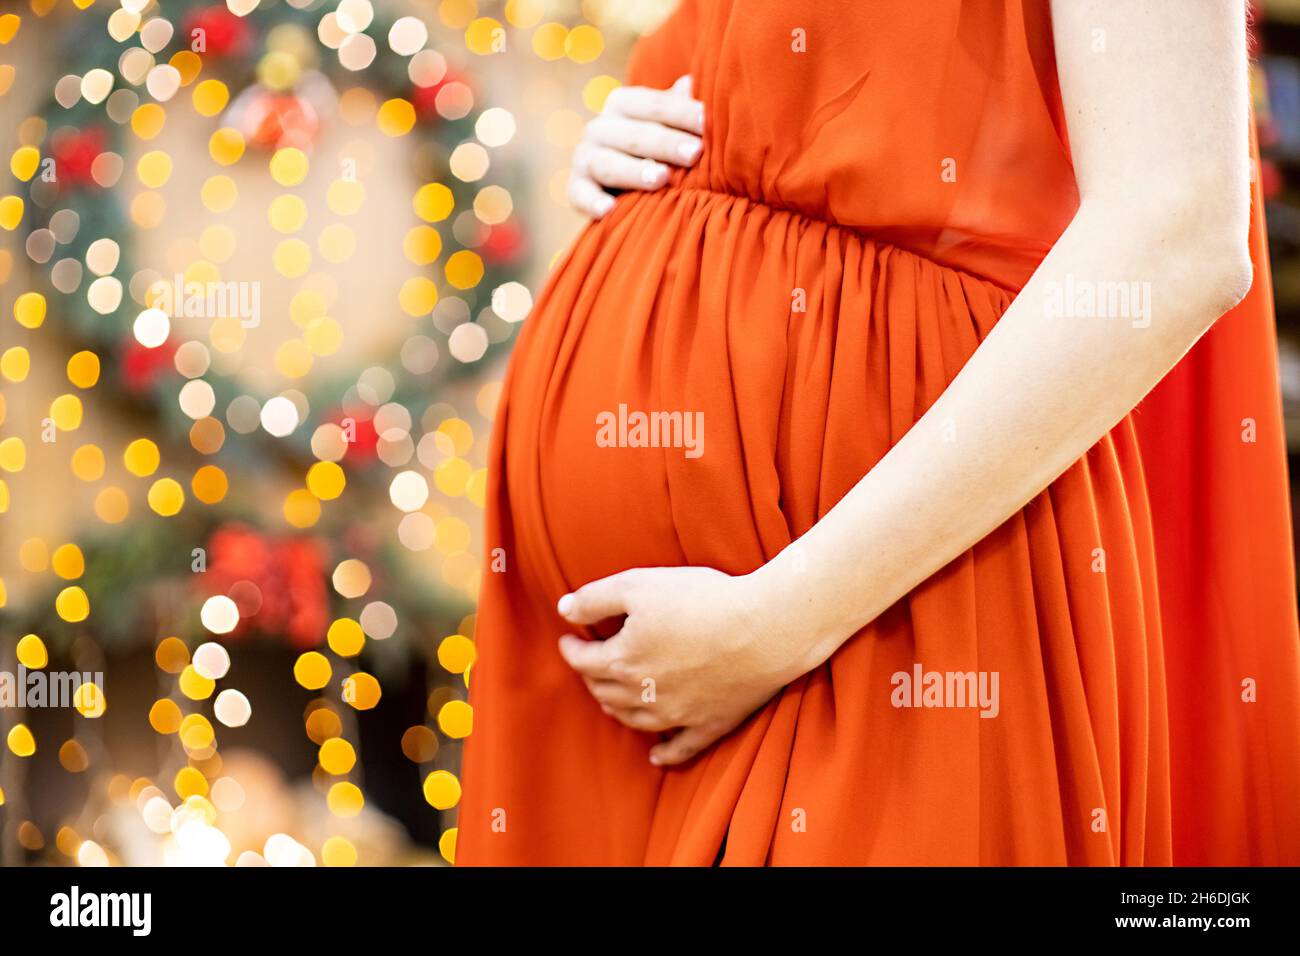 Bestes weihnachtsgeschenk. Schwangere in einem roten Kleid umarmt ihren Bauch vor dem Hintergrund des Weihnachtswohnzimmers in Unschärfe. Nahaufnahme kein Gesicht. Stockfoto